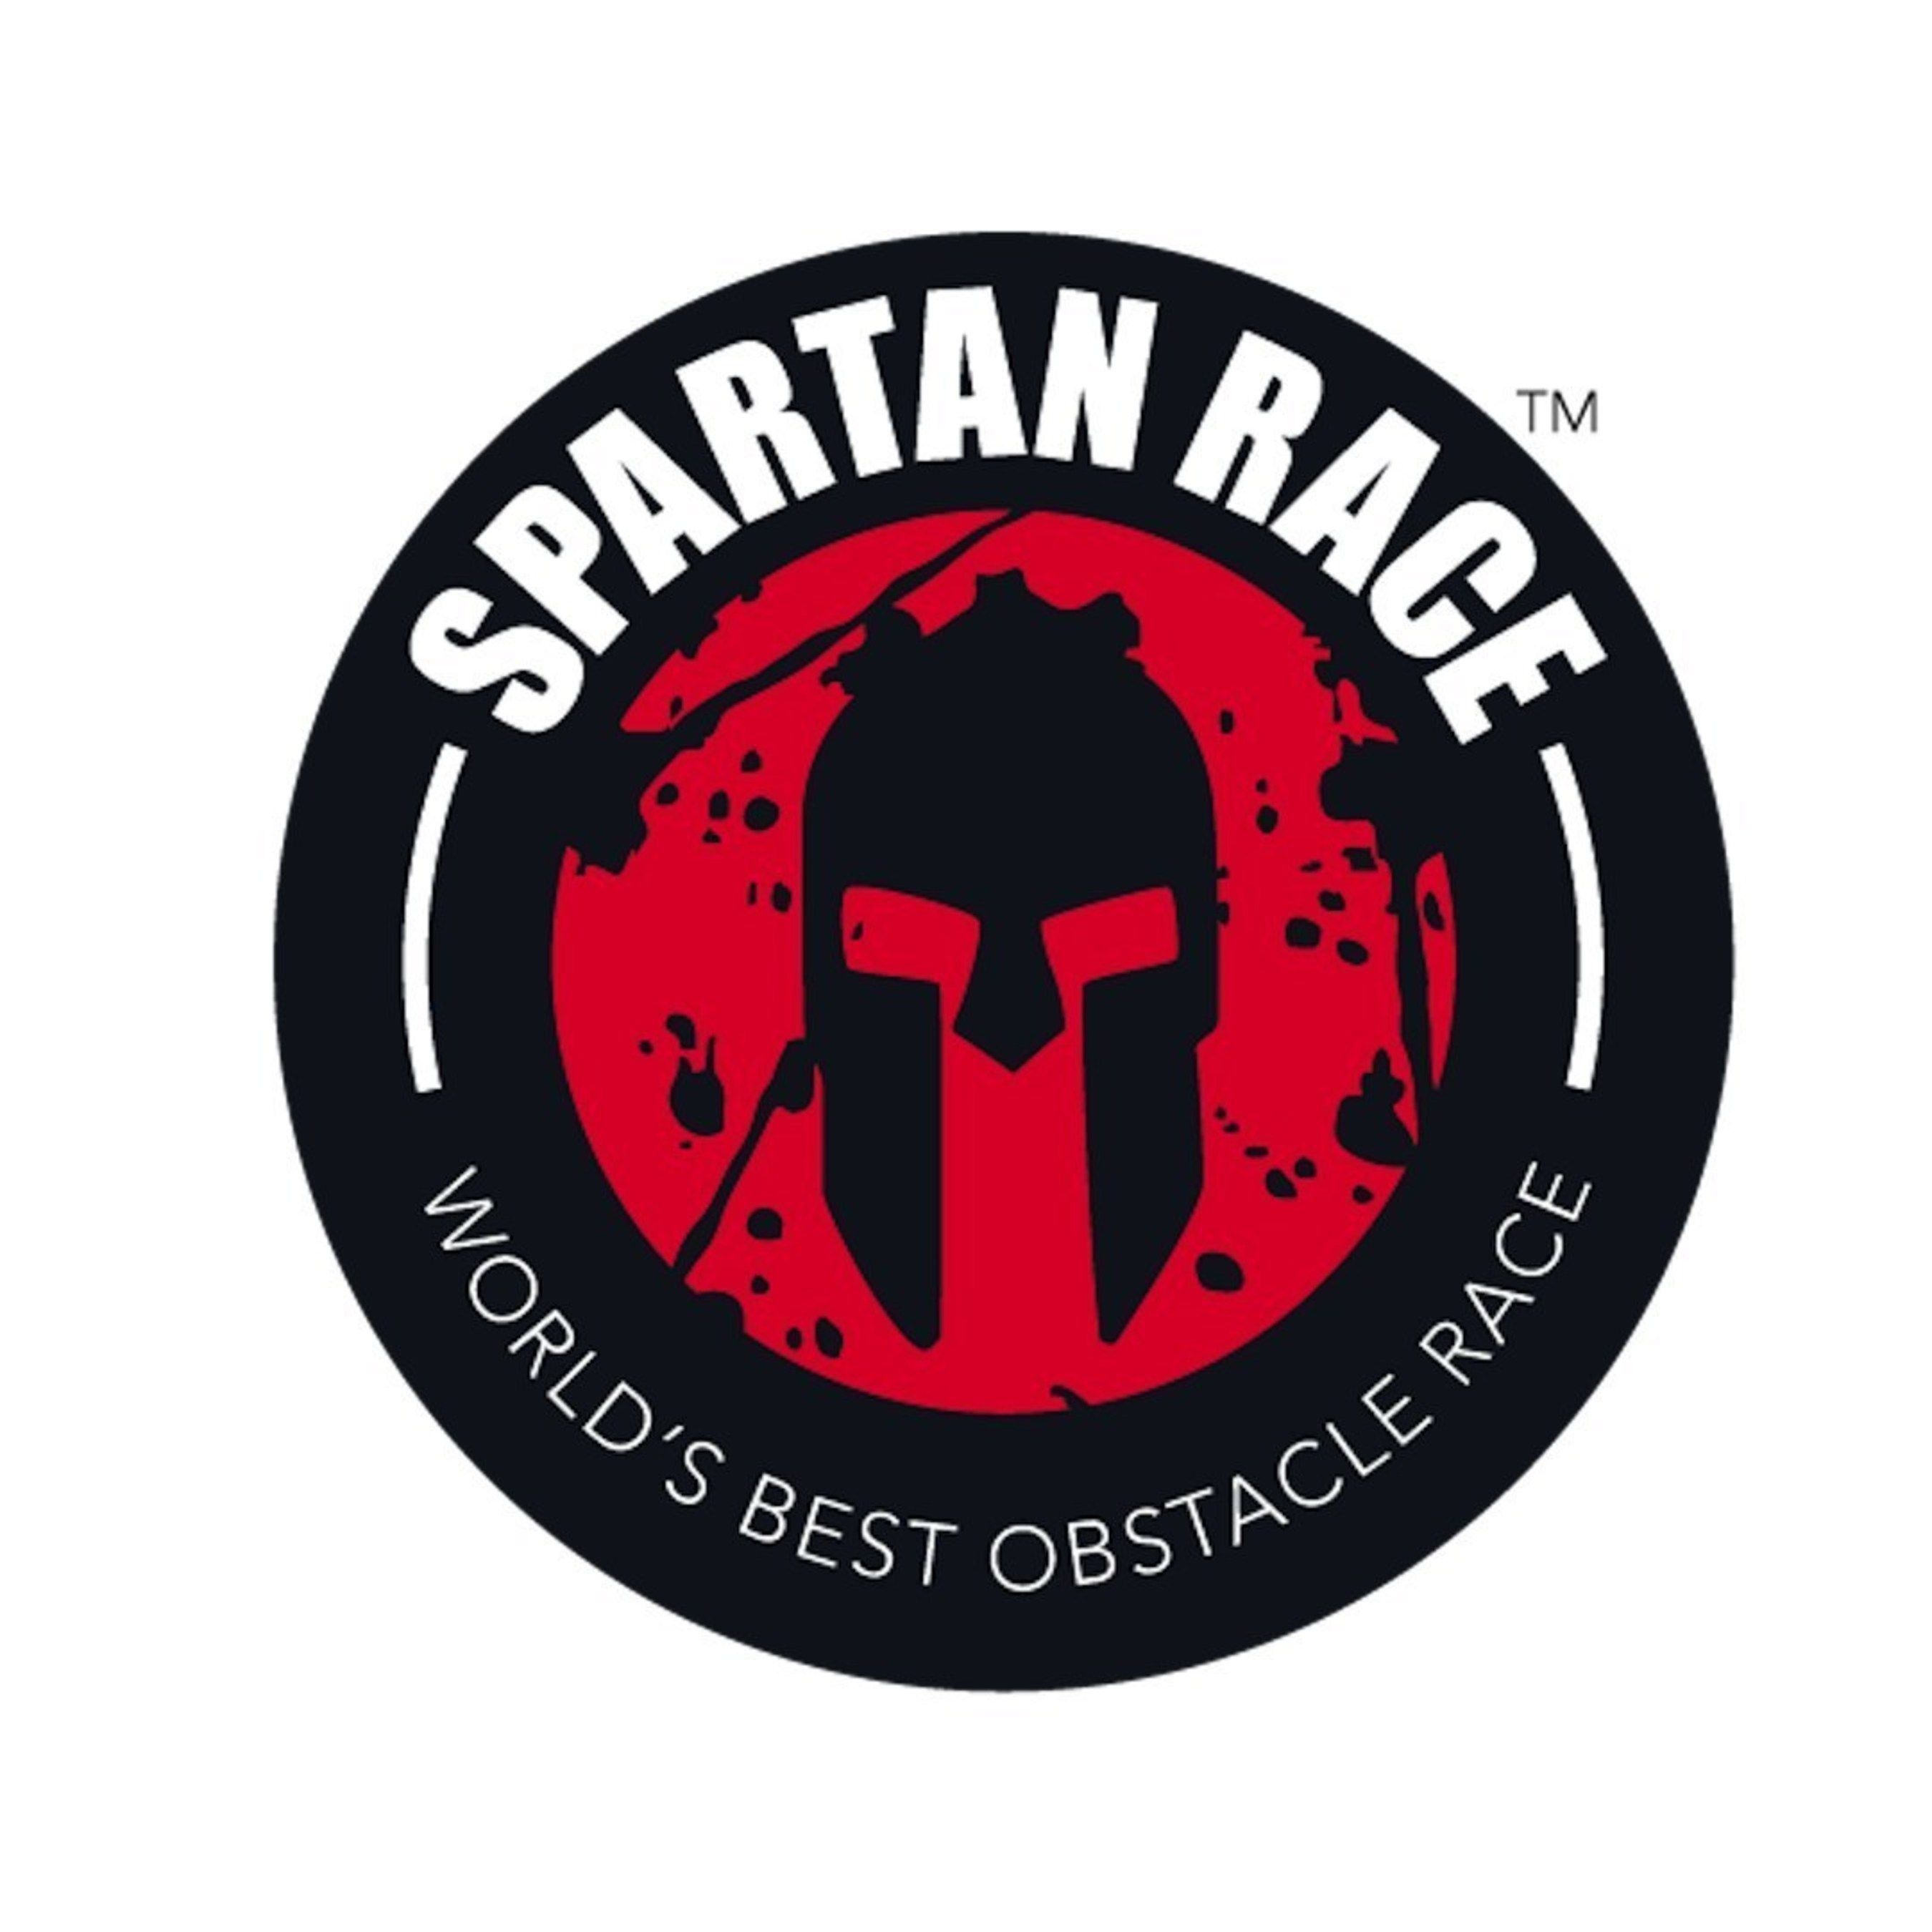 Spartan Race Logo Vector at Vectorified.com | Collection of Spartan